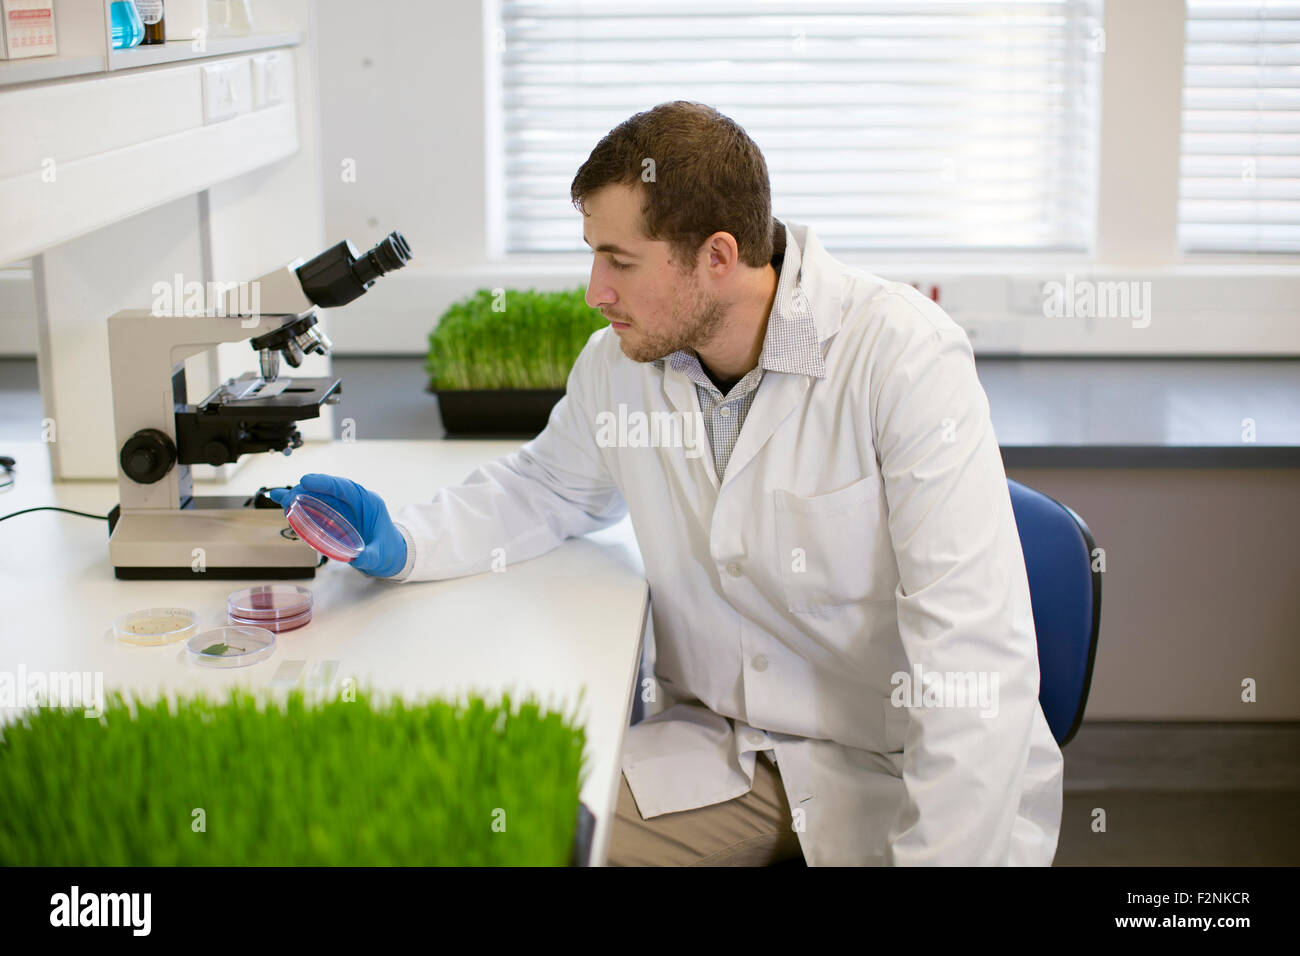 Caucasian scientist examining sample in laboratory Stock Photo